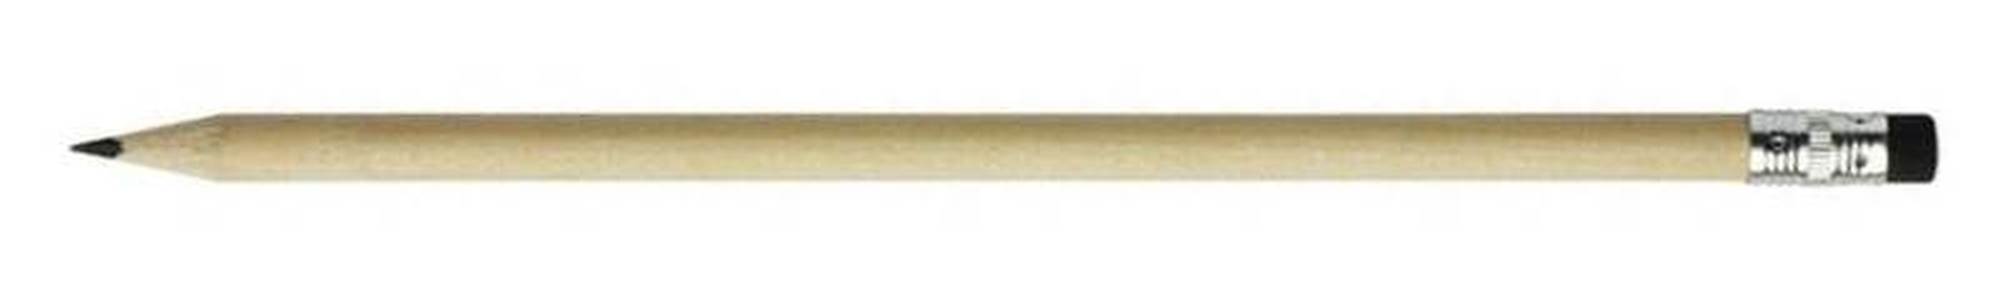 Ołówek reklamowy z nadrukiem drewniany – 19812 – Klasyczny